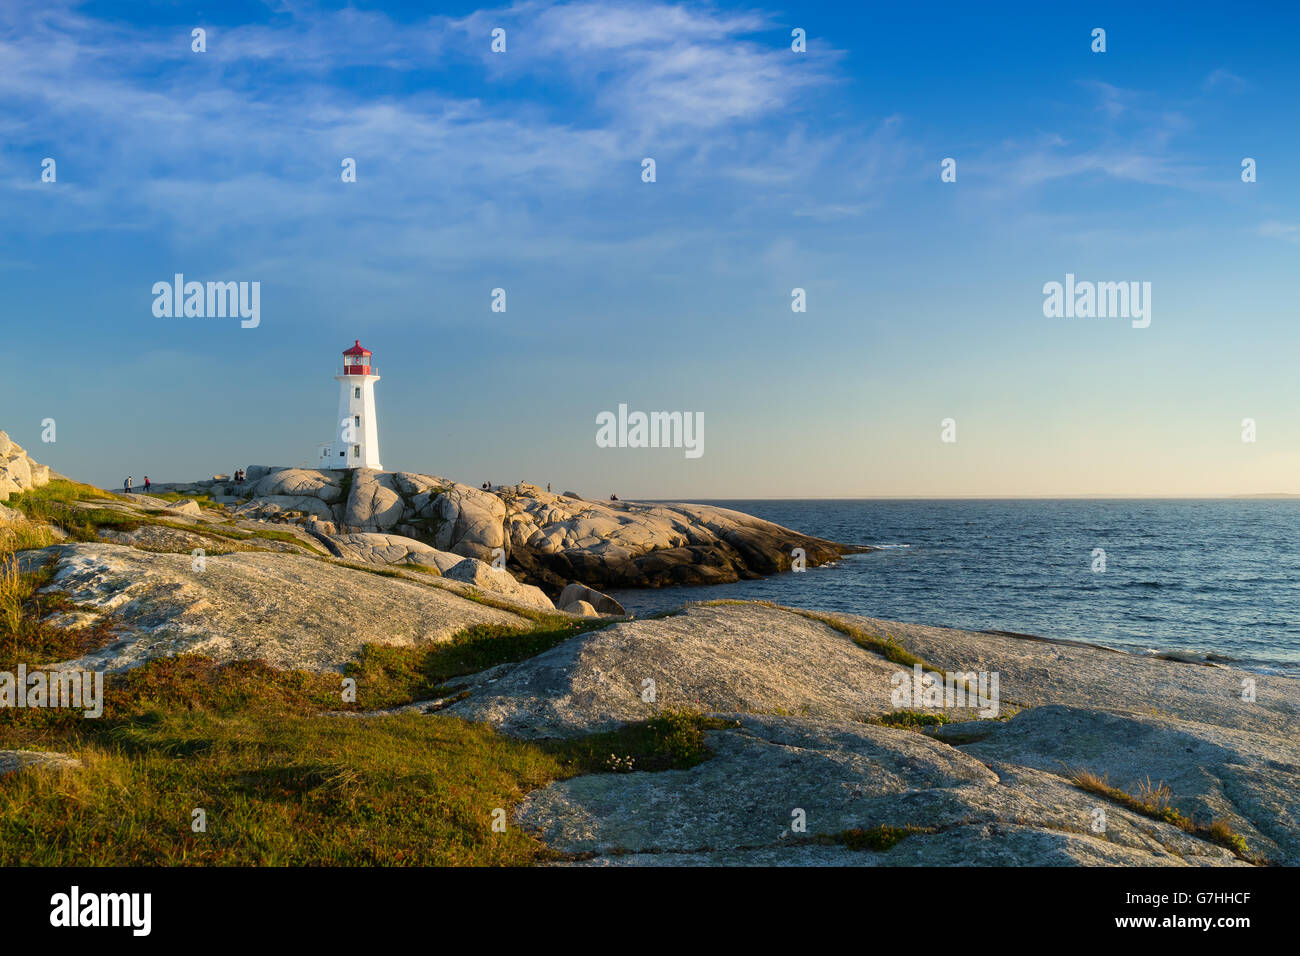 Peggy's Cove lighthouse, Nova Scotia, Canada. Stock Photo